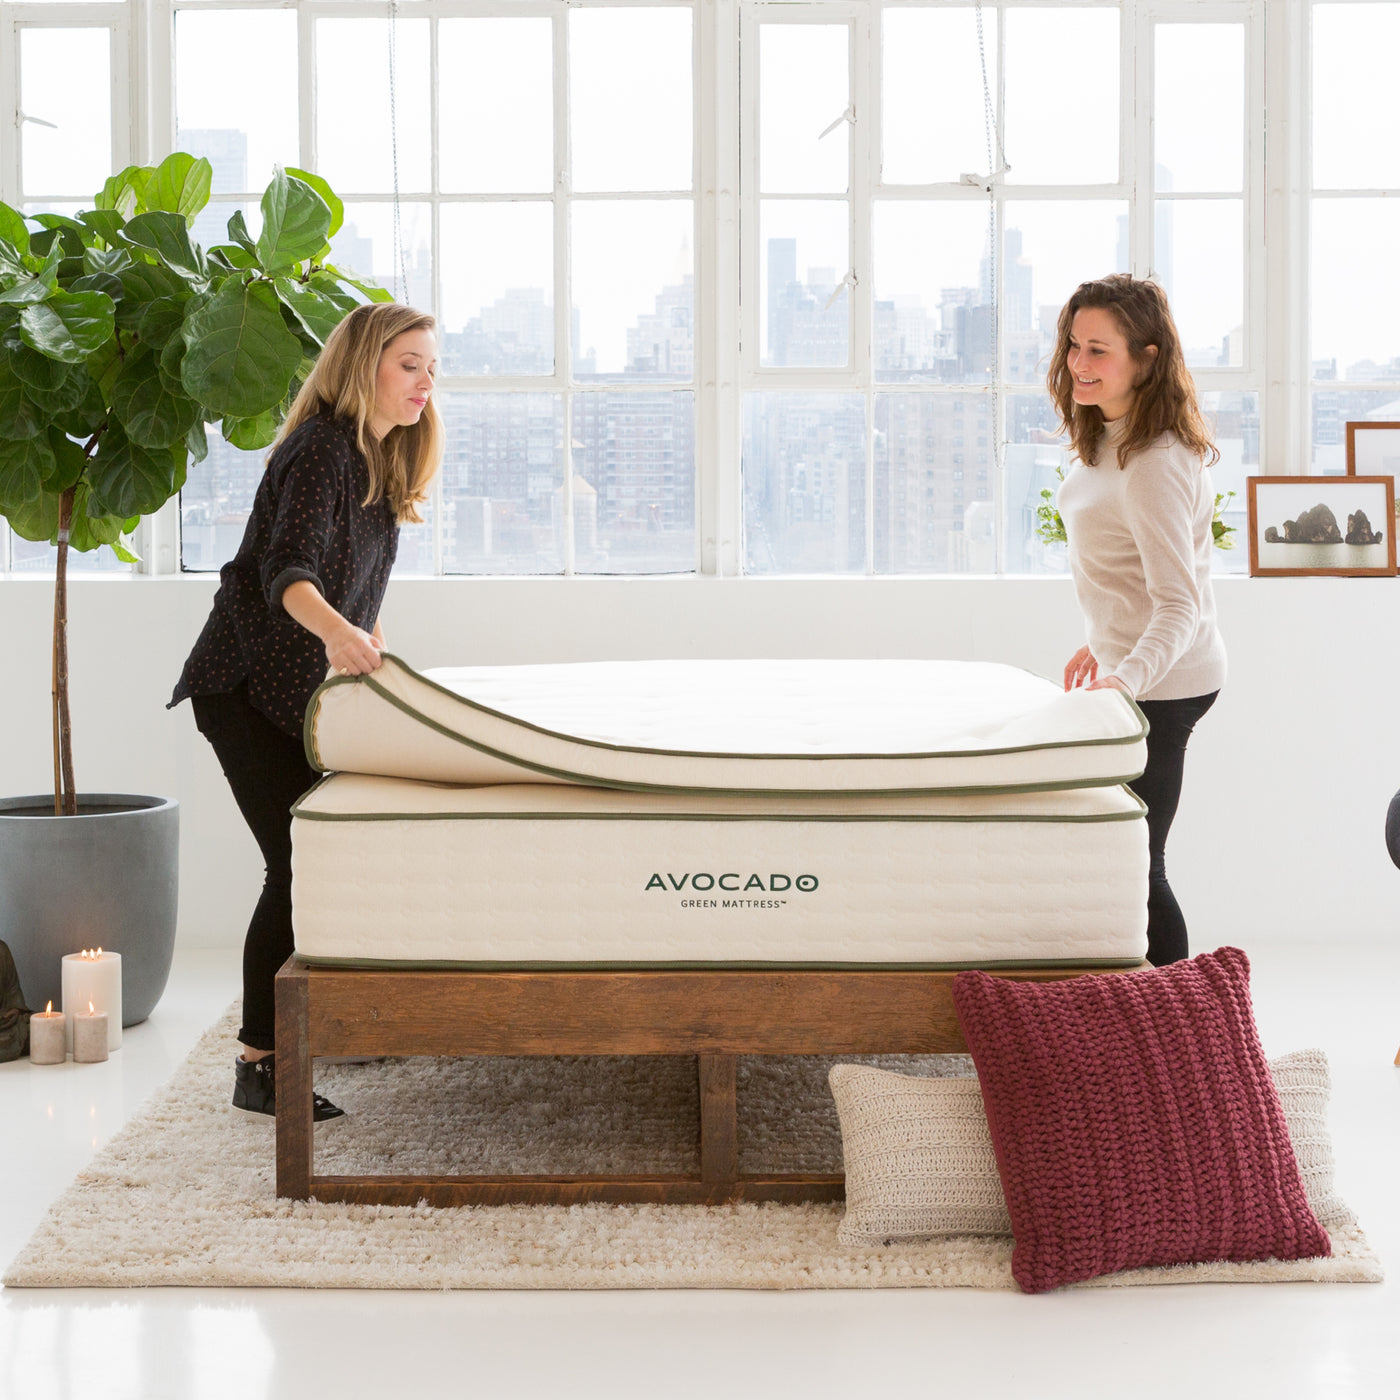 An organic mattress topper from Avocado Green Mattress